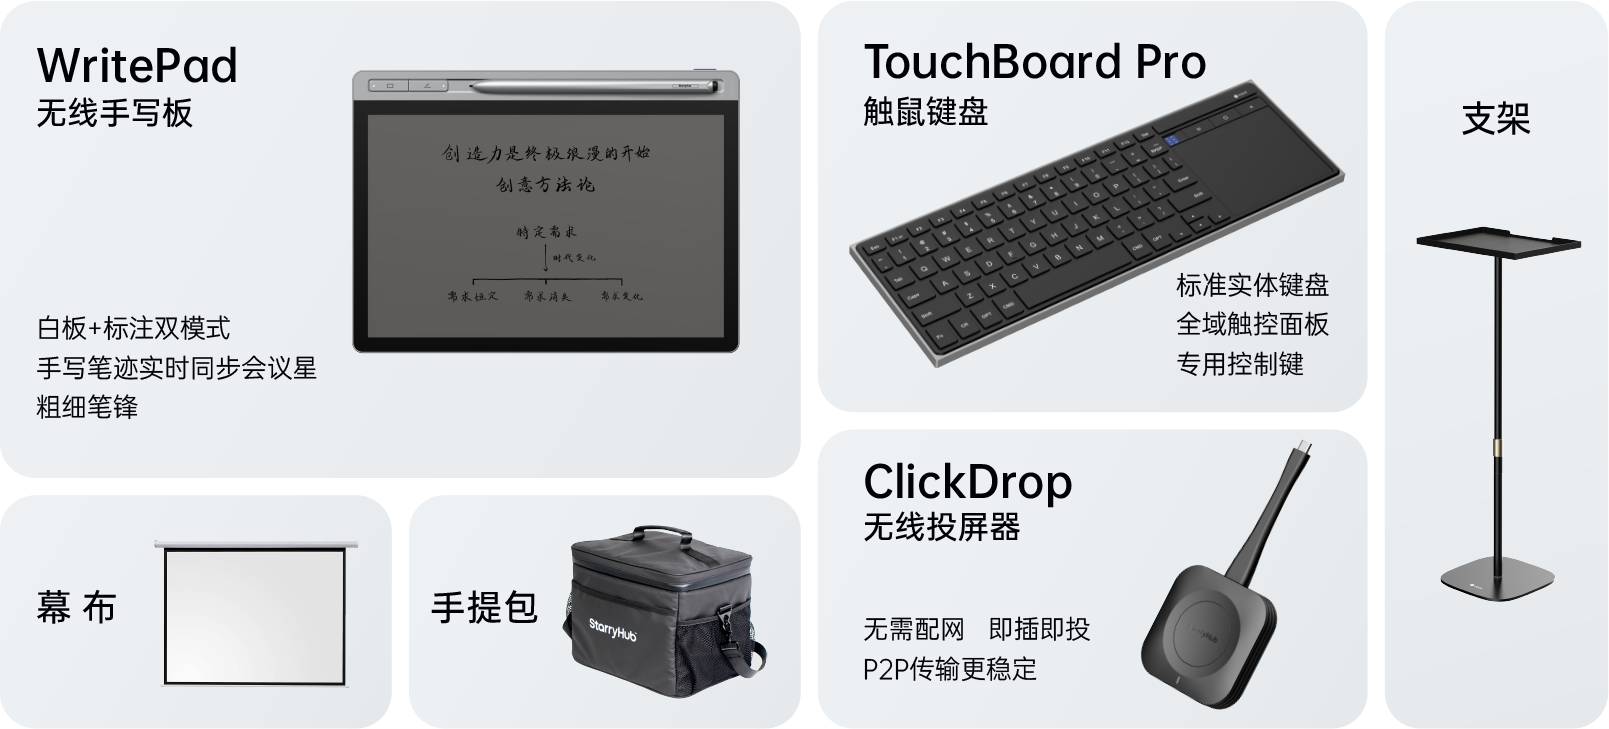 会议星可选配件：WritePad(无线手写板)， TouchBoard Pro(触鼠键盘)，幕布，手提包，ClickDrop(无线外设模块)，支架